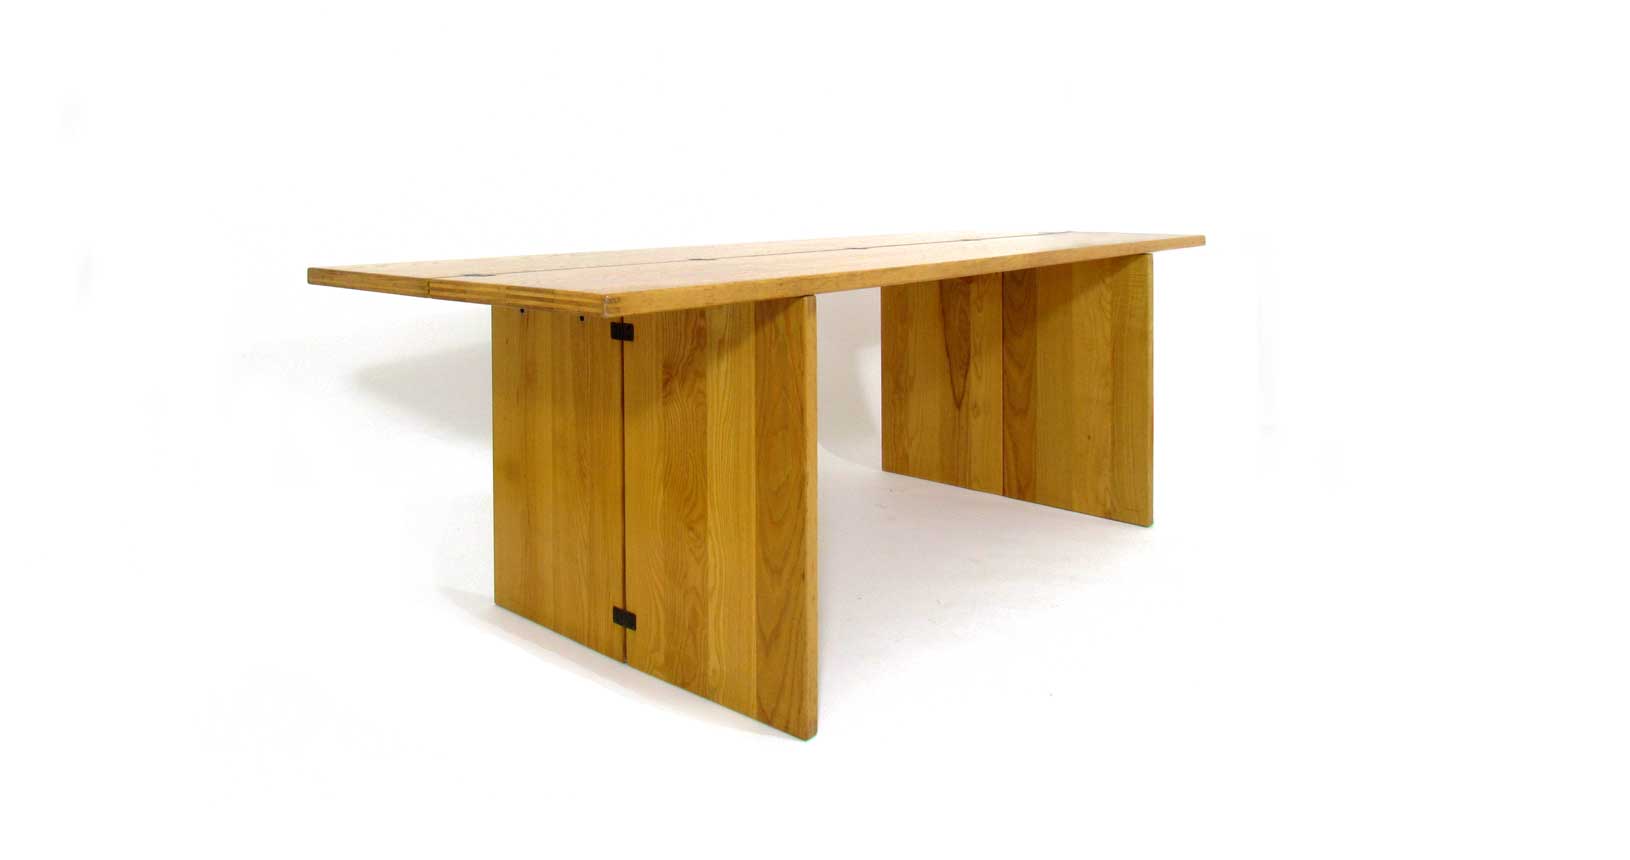 cassina la barca piero de martini vintage design iconicdesign furniture table wood iconic design